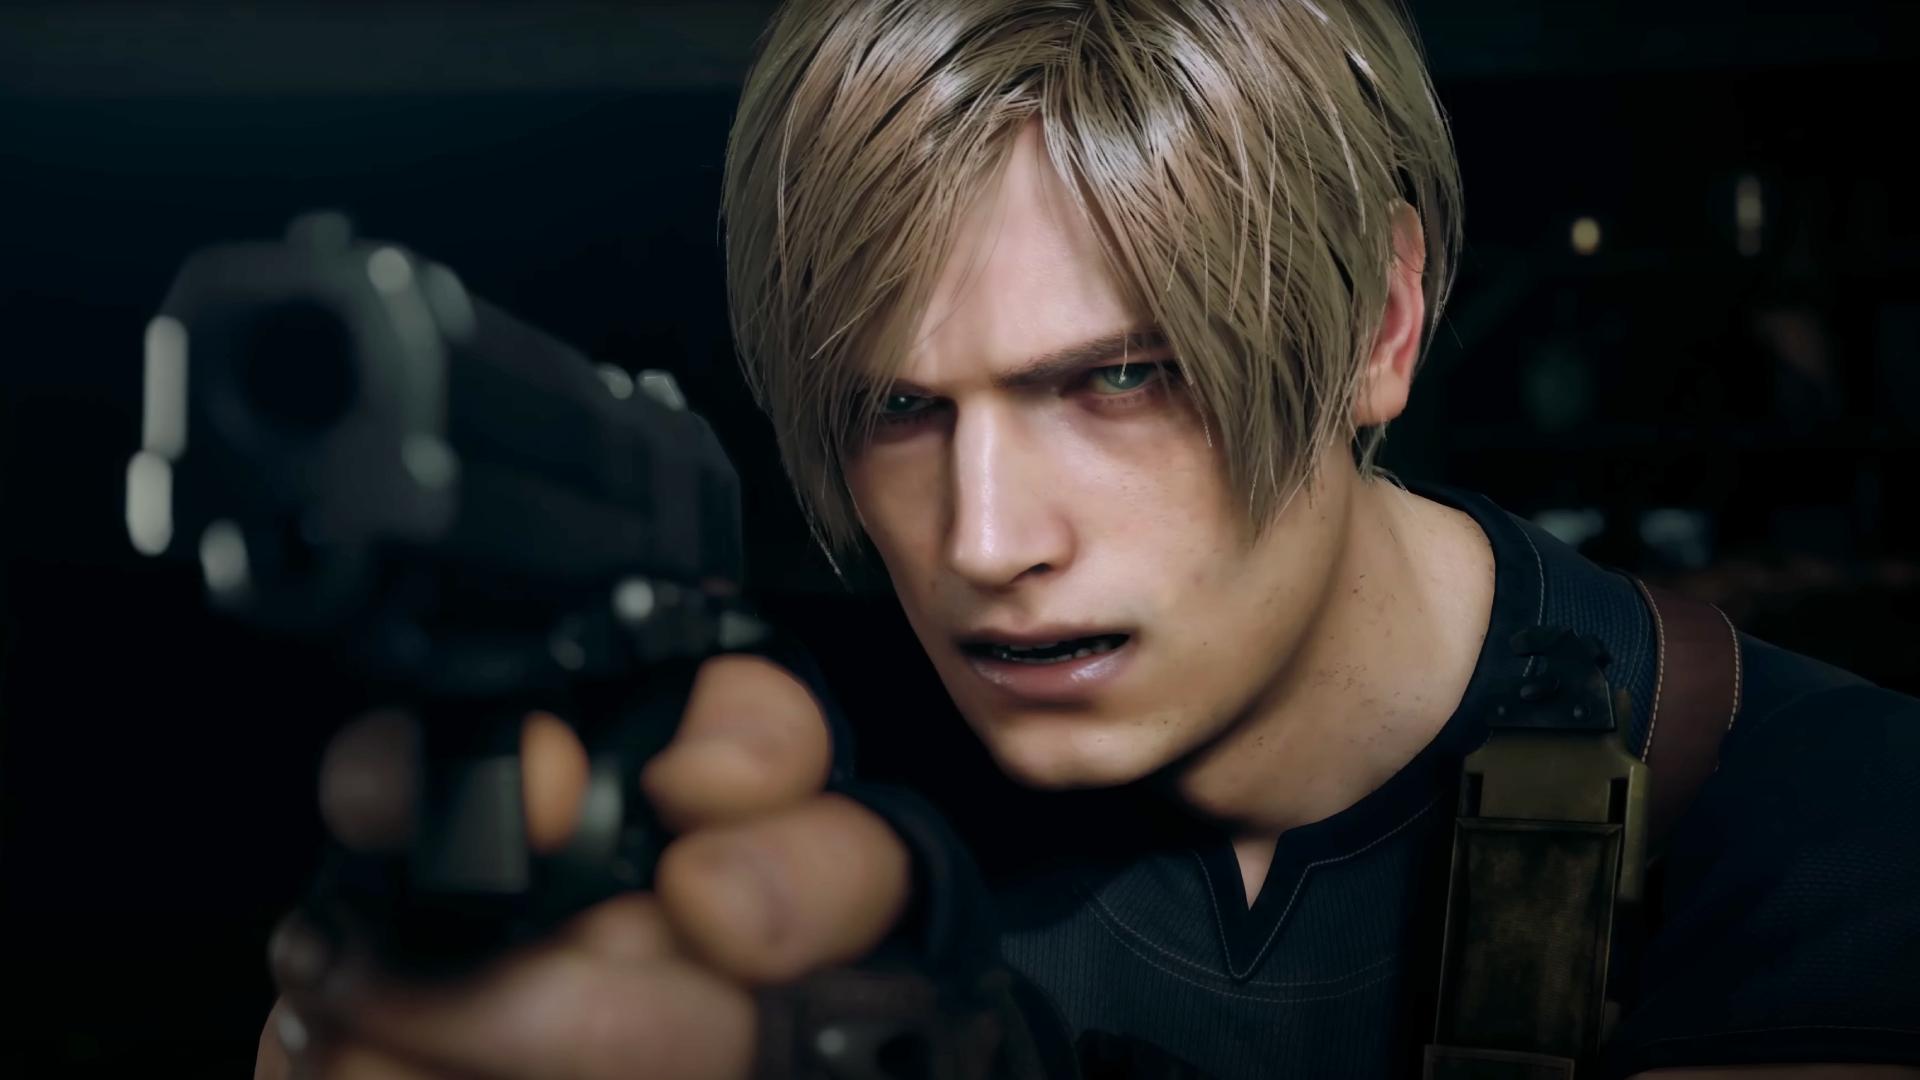 Cut Content CONFIRMED?! Resident Evil 4 Remake Ada Wong DLC News